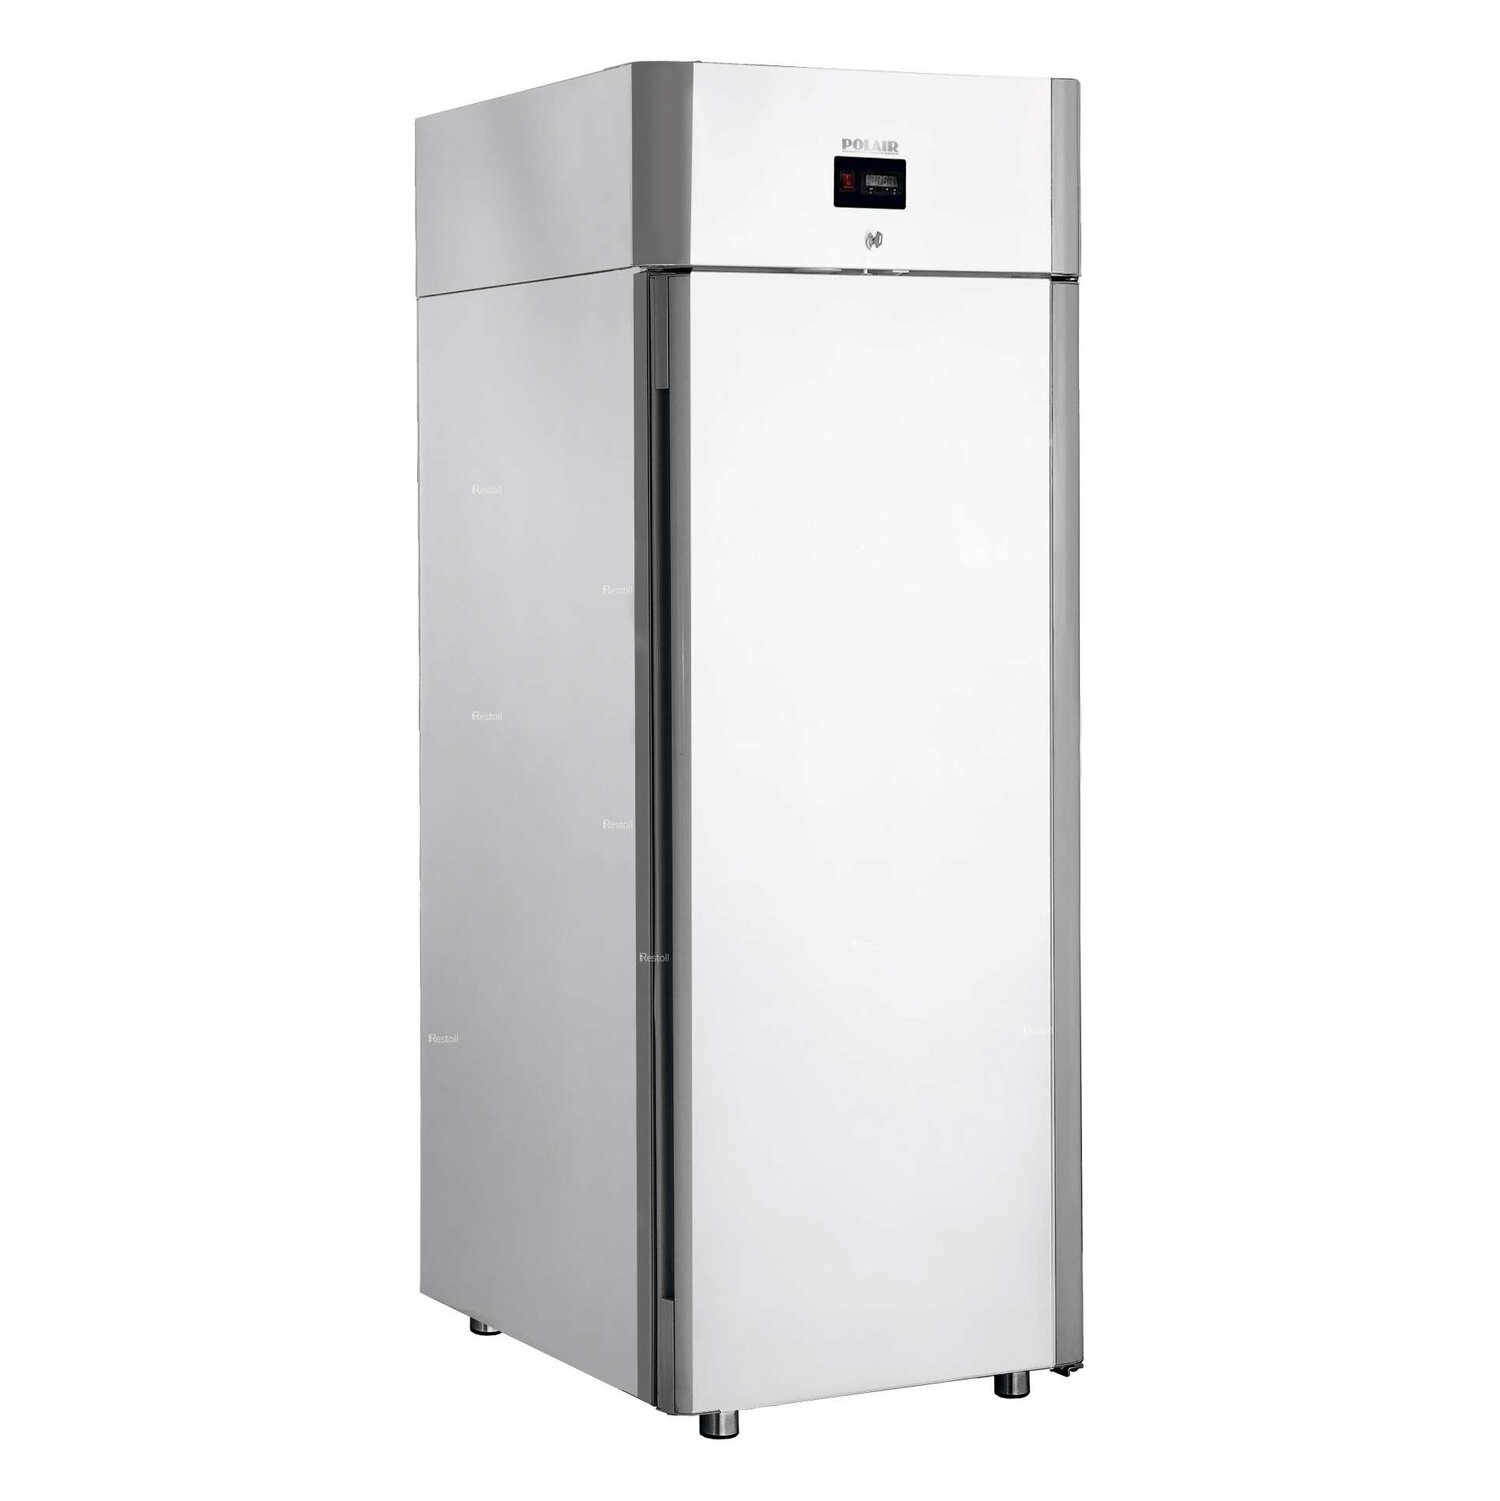 шкаф холодильный низкотемпературный cb105 s шн 0 5